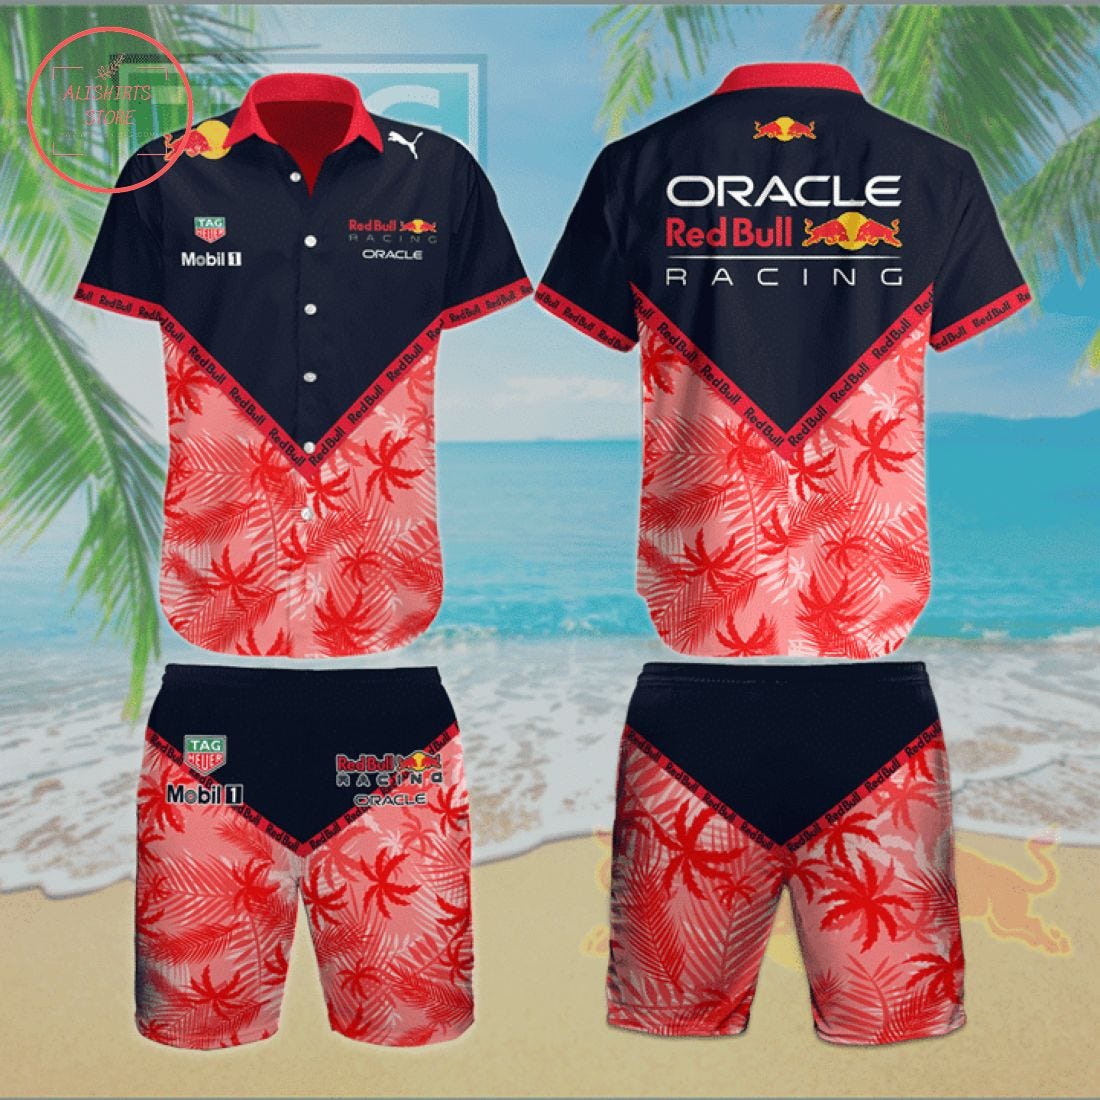 Oracle Red Bull Racing Team Hawaiian Shirt and Shorts